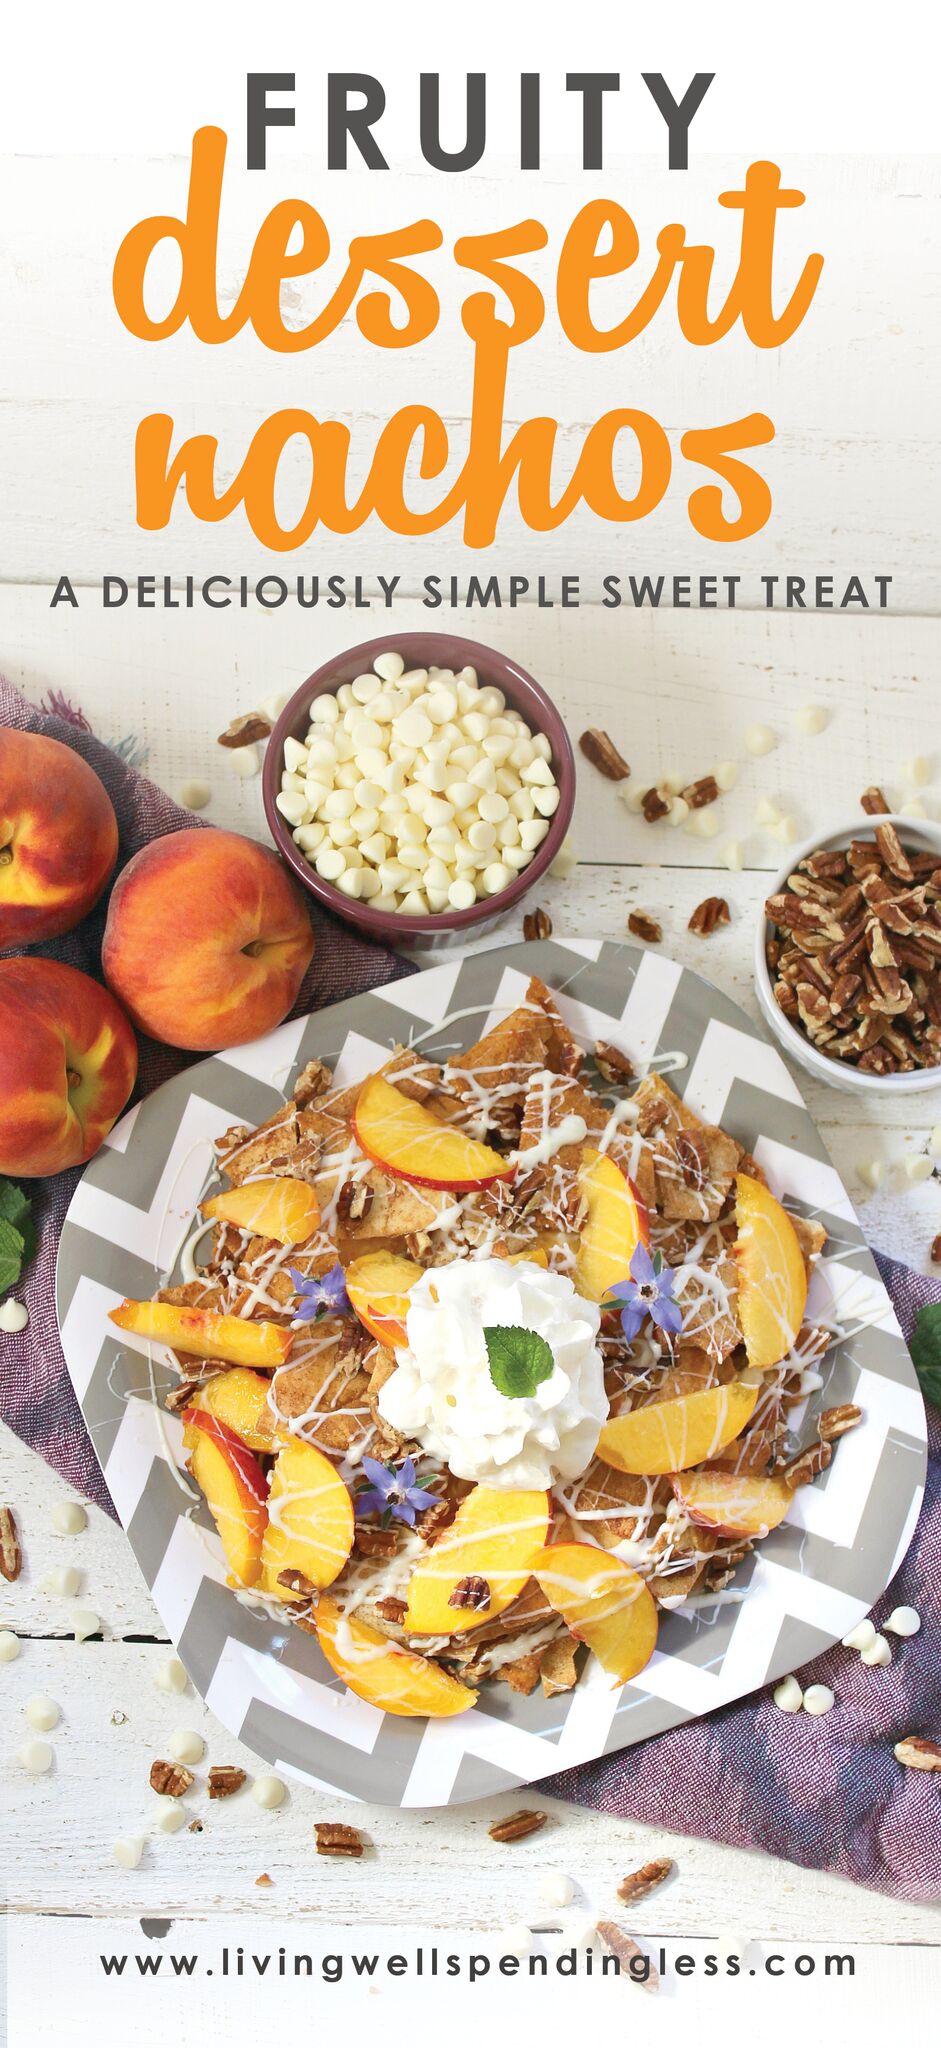 Peaches & Cream Dessert Nachos | Fruity Dessert Nachos | 5 Ingredient Dessert | Food Made Simple | Dessert on the Go | Tailgating Dessert | Family Fun in the Kitchen | Easy Dessert | Summer Dessert Recipe